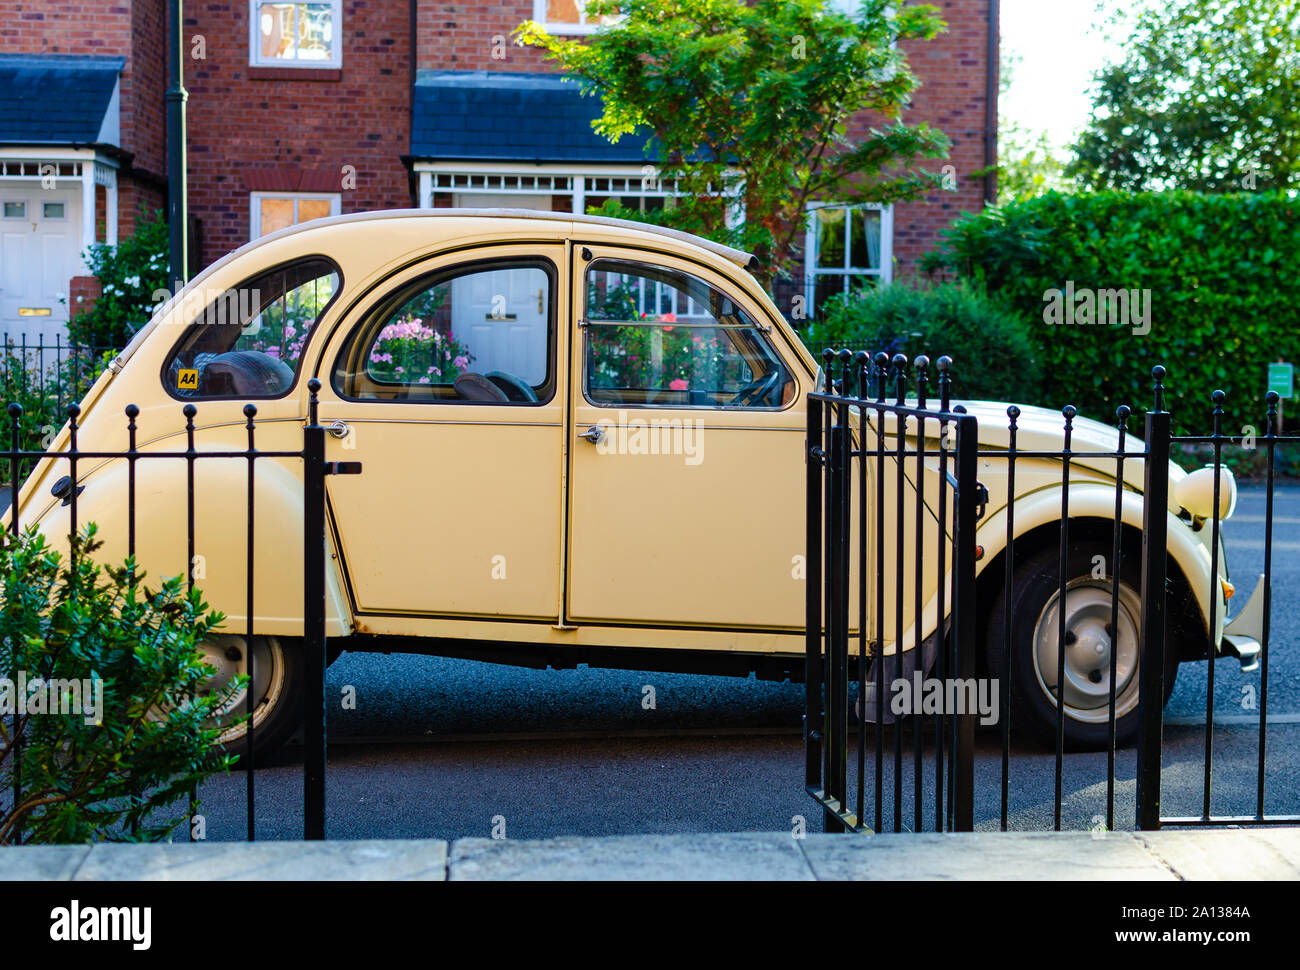 Die classic car Citroën 2CV neben einem malerischen Haus in England geparkt. Stockfoto